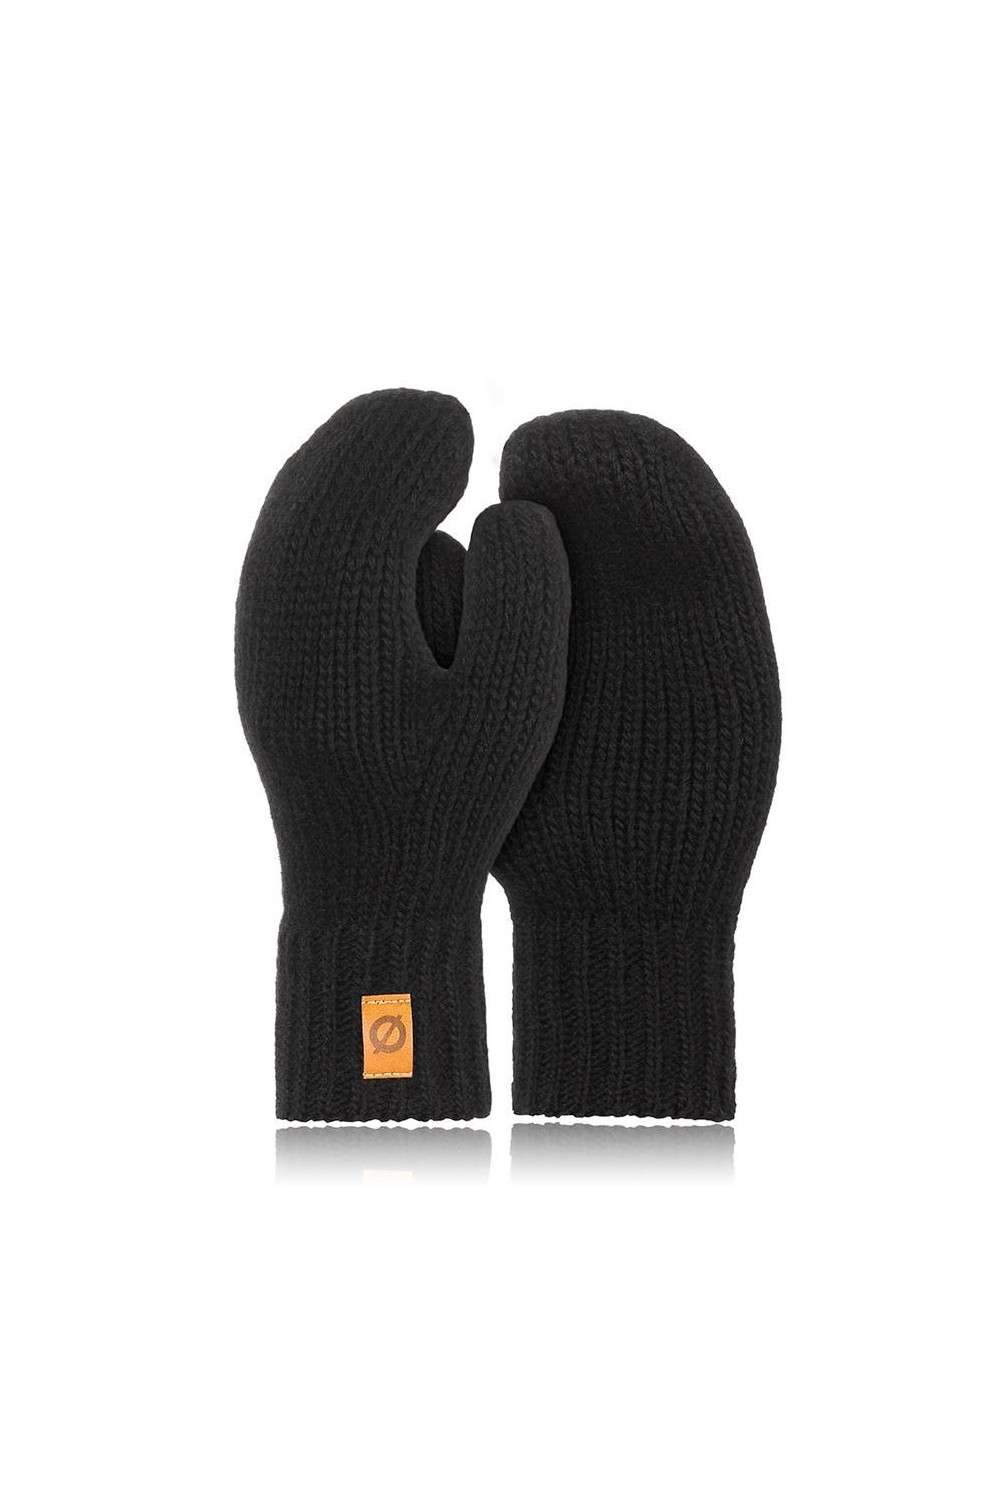 Damskie rękawiczki zimowe jednopalczaste brodrene r02 czarne